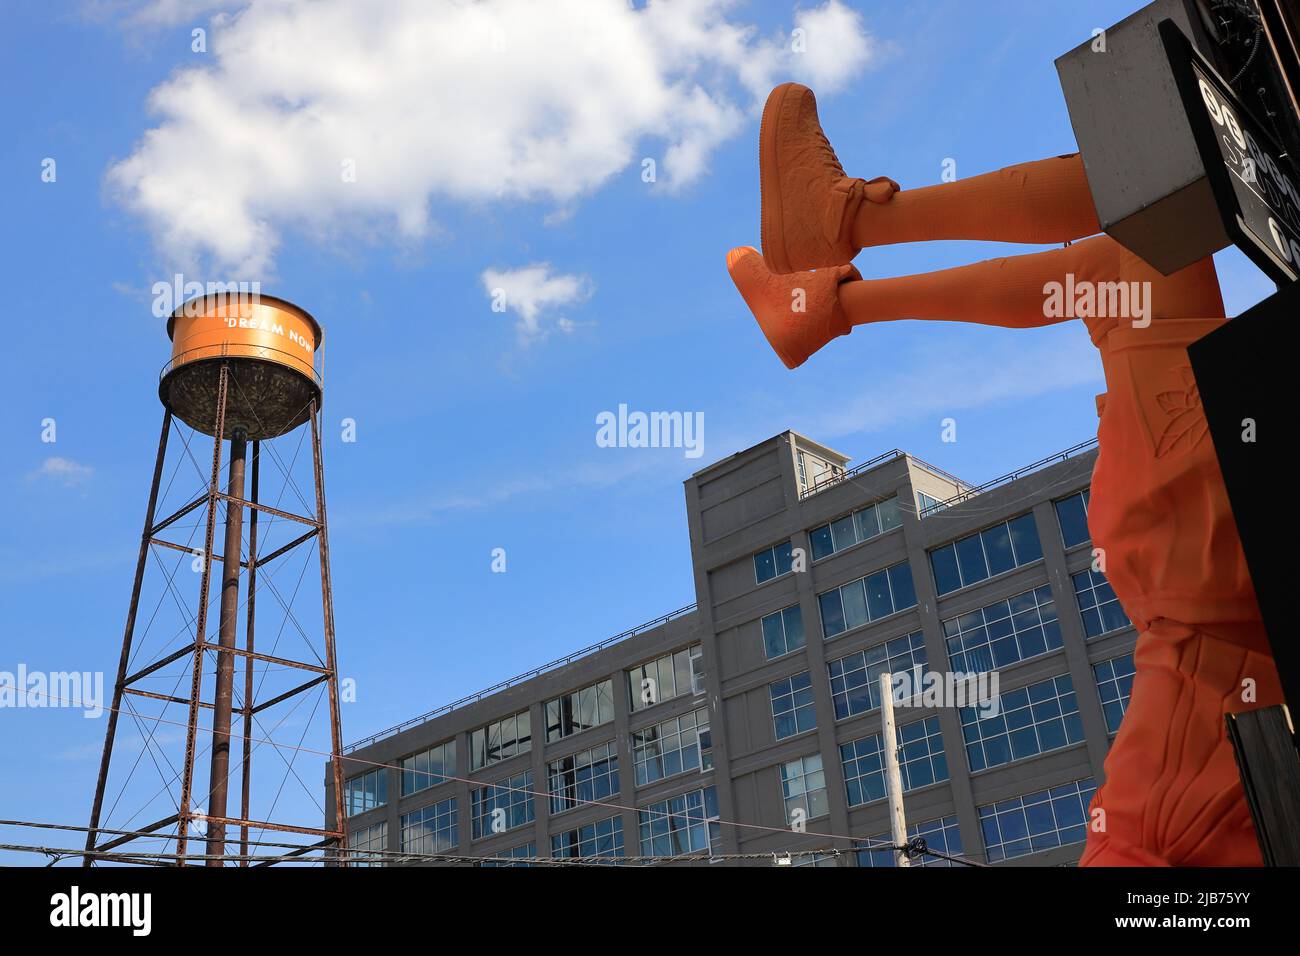 La statue et la tour d'eau décorée à Greenpoint terminal Warehouse pour l'exposition Louis Vuitton et Nike Air Force 1 de Virgile Abloh. Greenpoint.Brooklyn.New York City.USA Banque D'Images